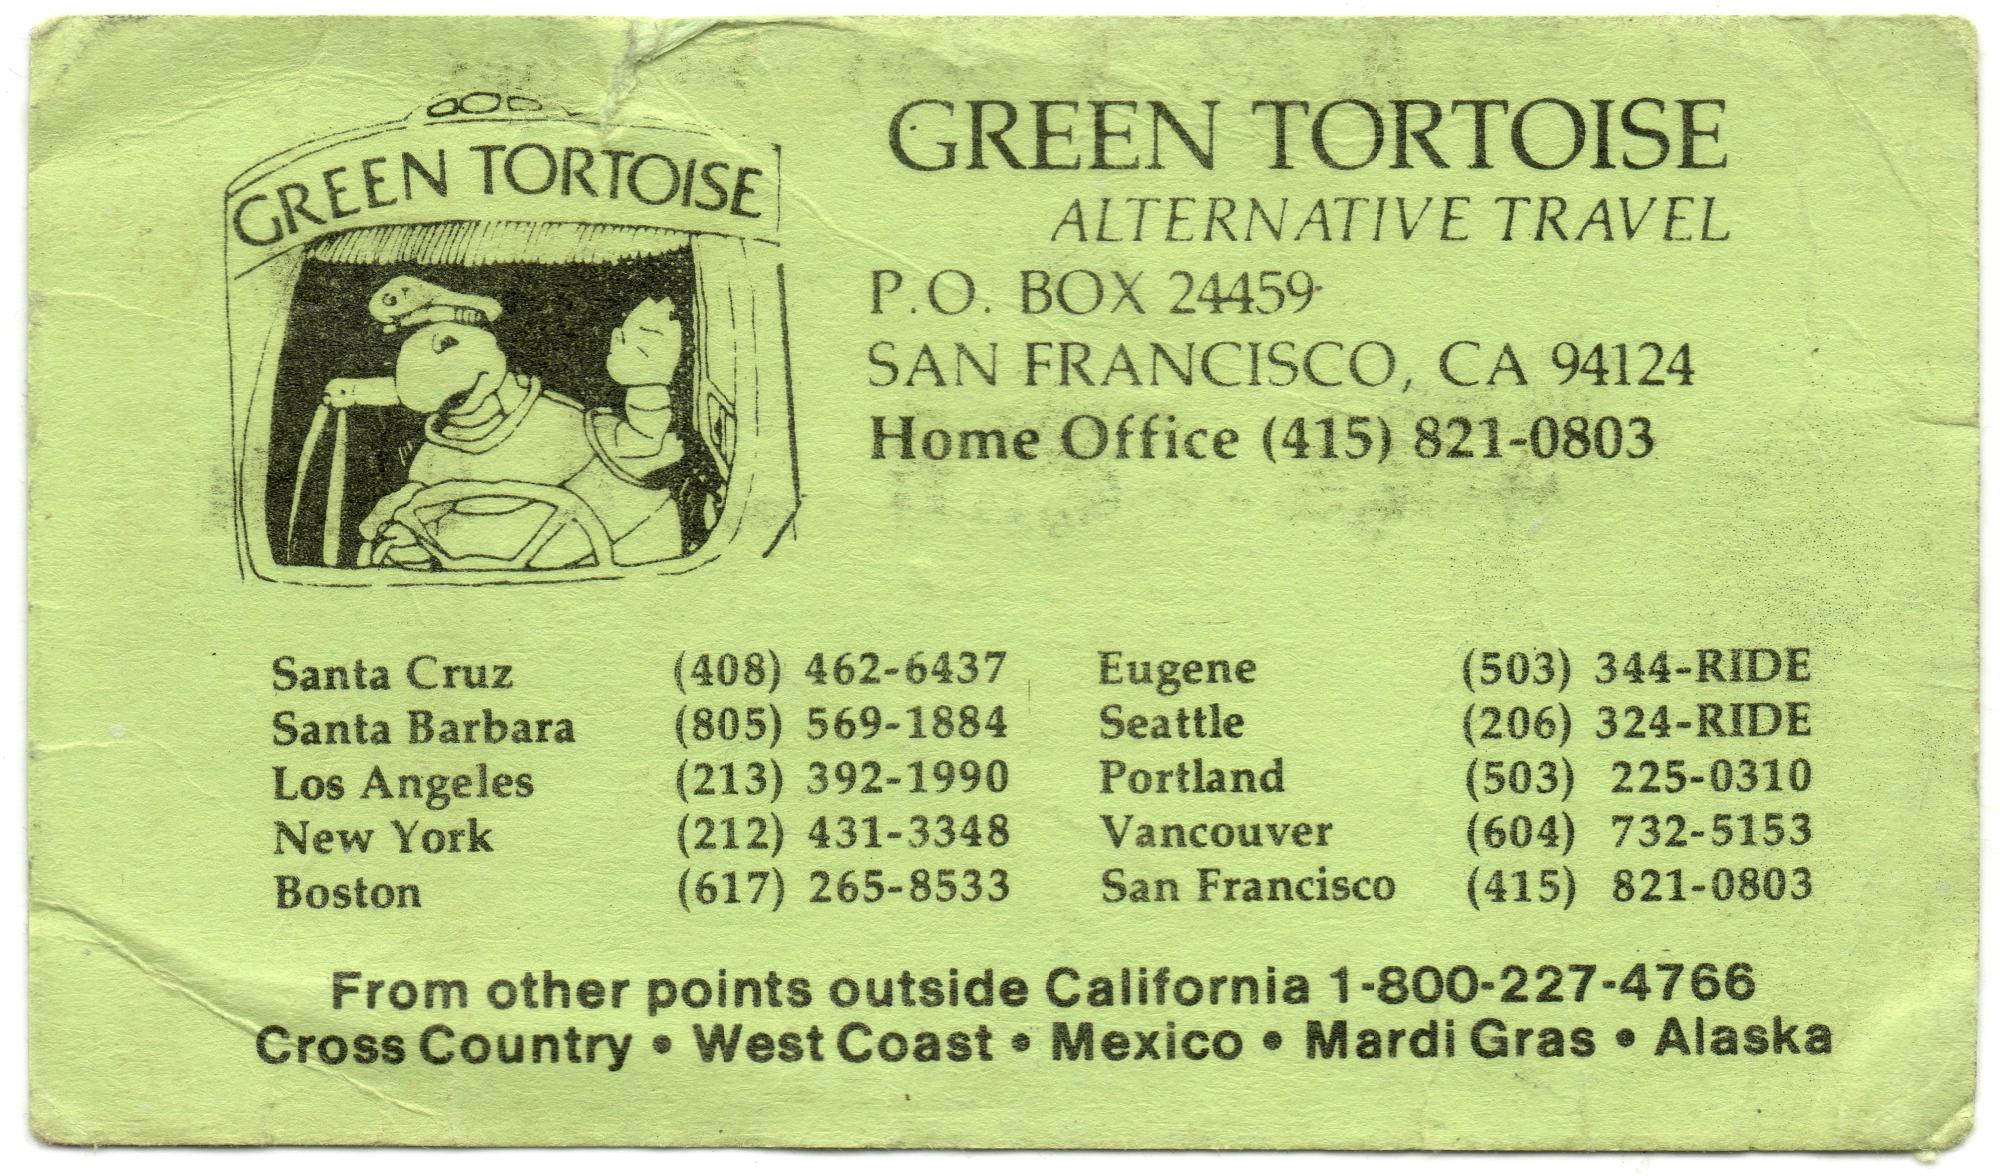 UT Austin - Bus Card Green Tortoise